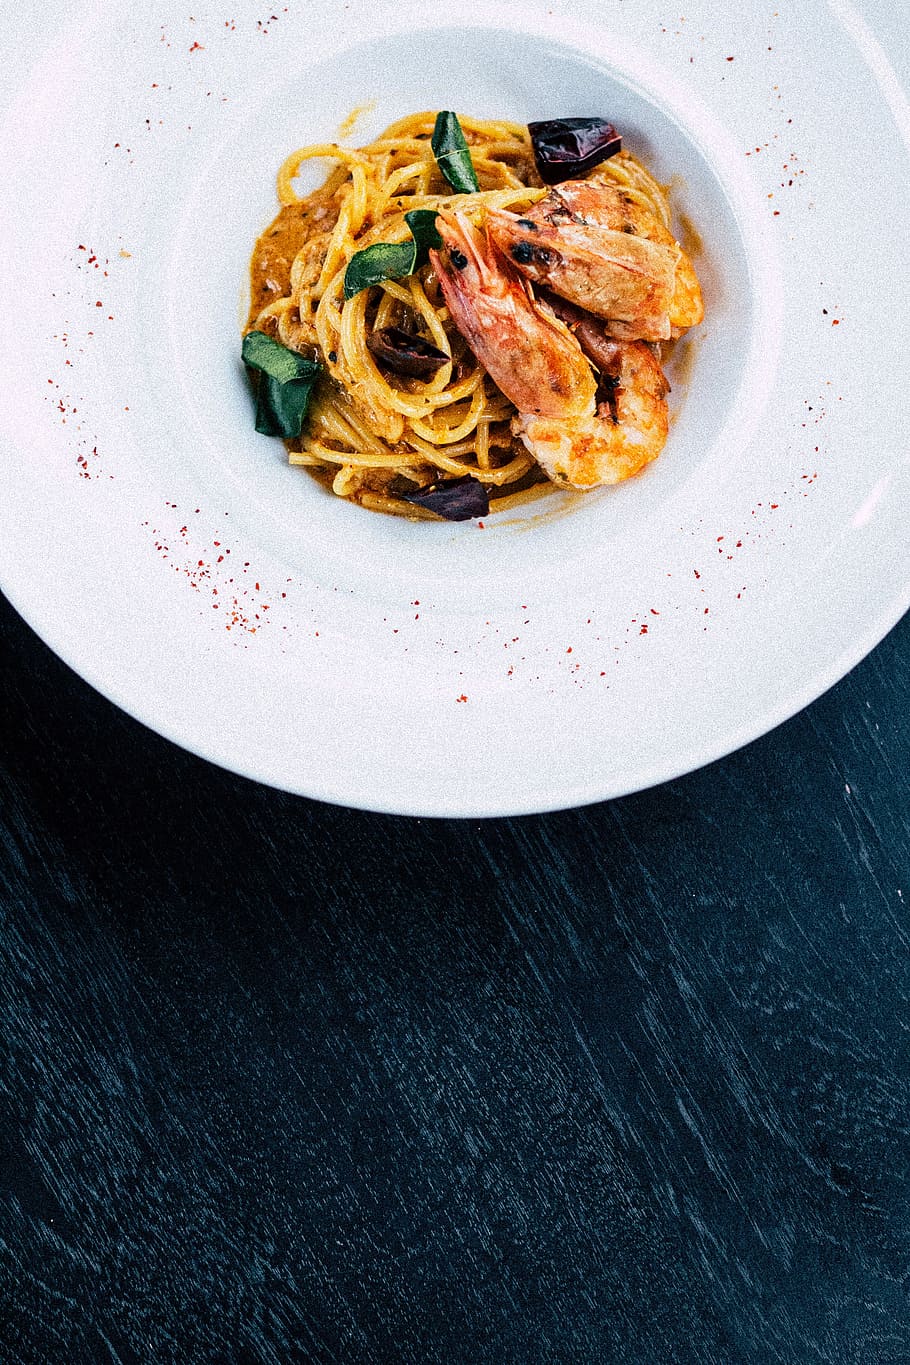 shrimp pasta in white bowl, pasta in white ceramic plate, food